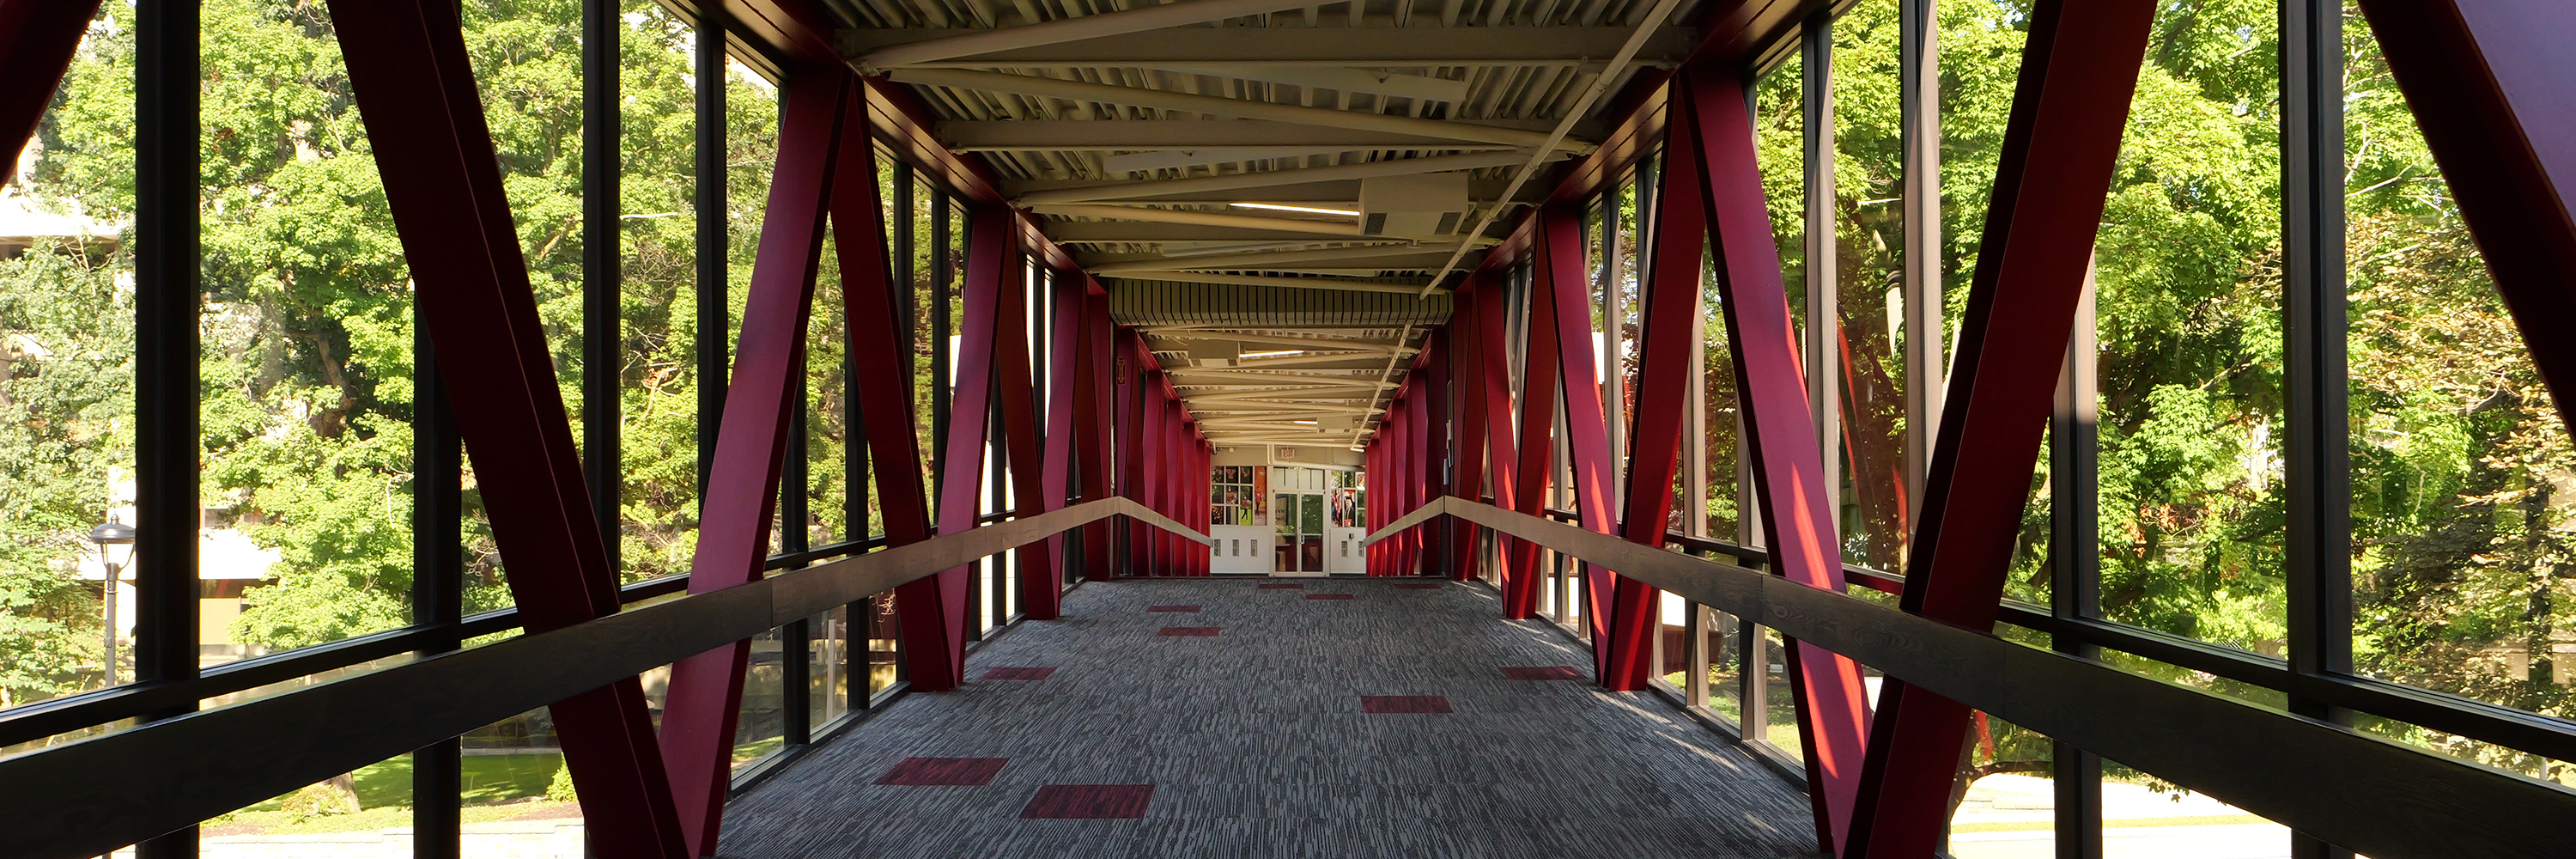 Bridge on campus